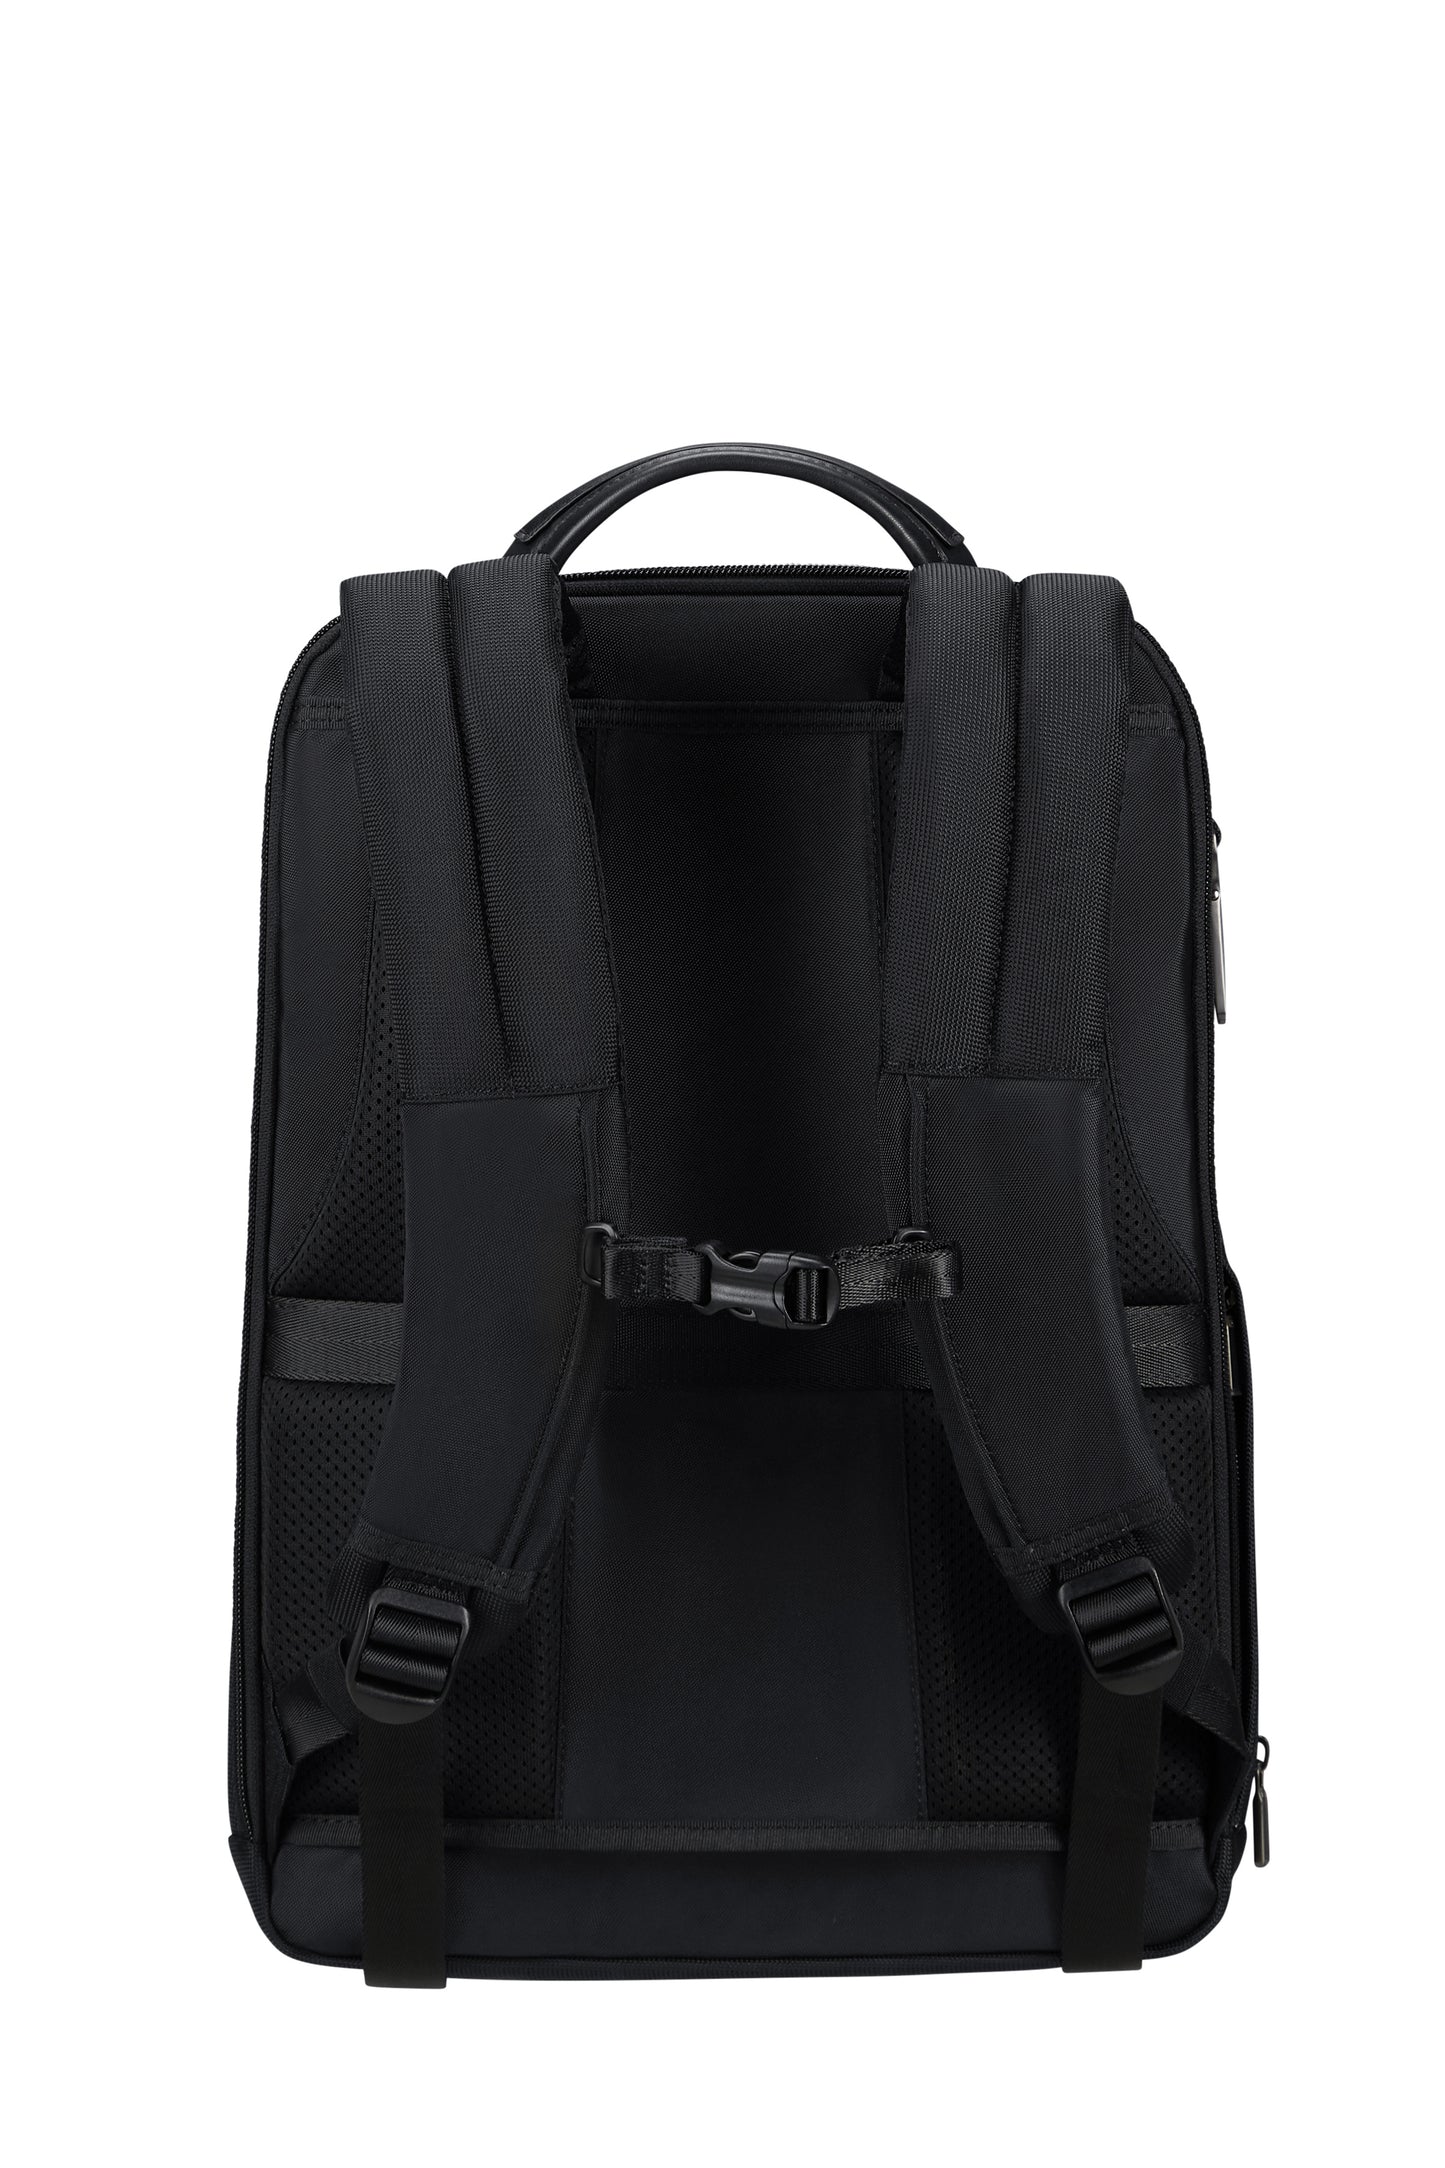 URBAN-EYE   backpack 15.6"  black